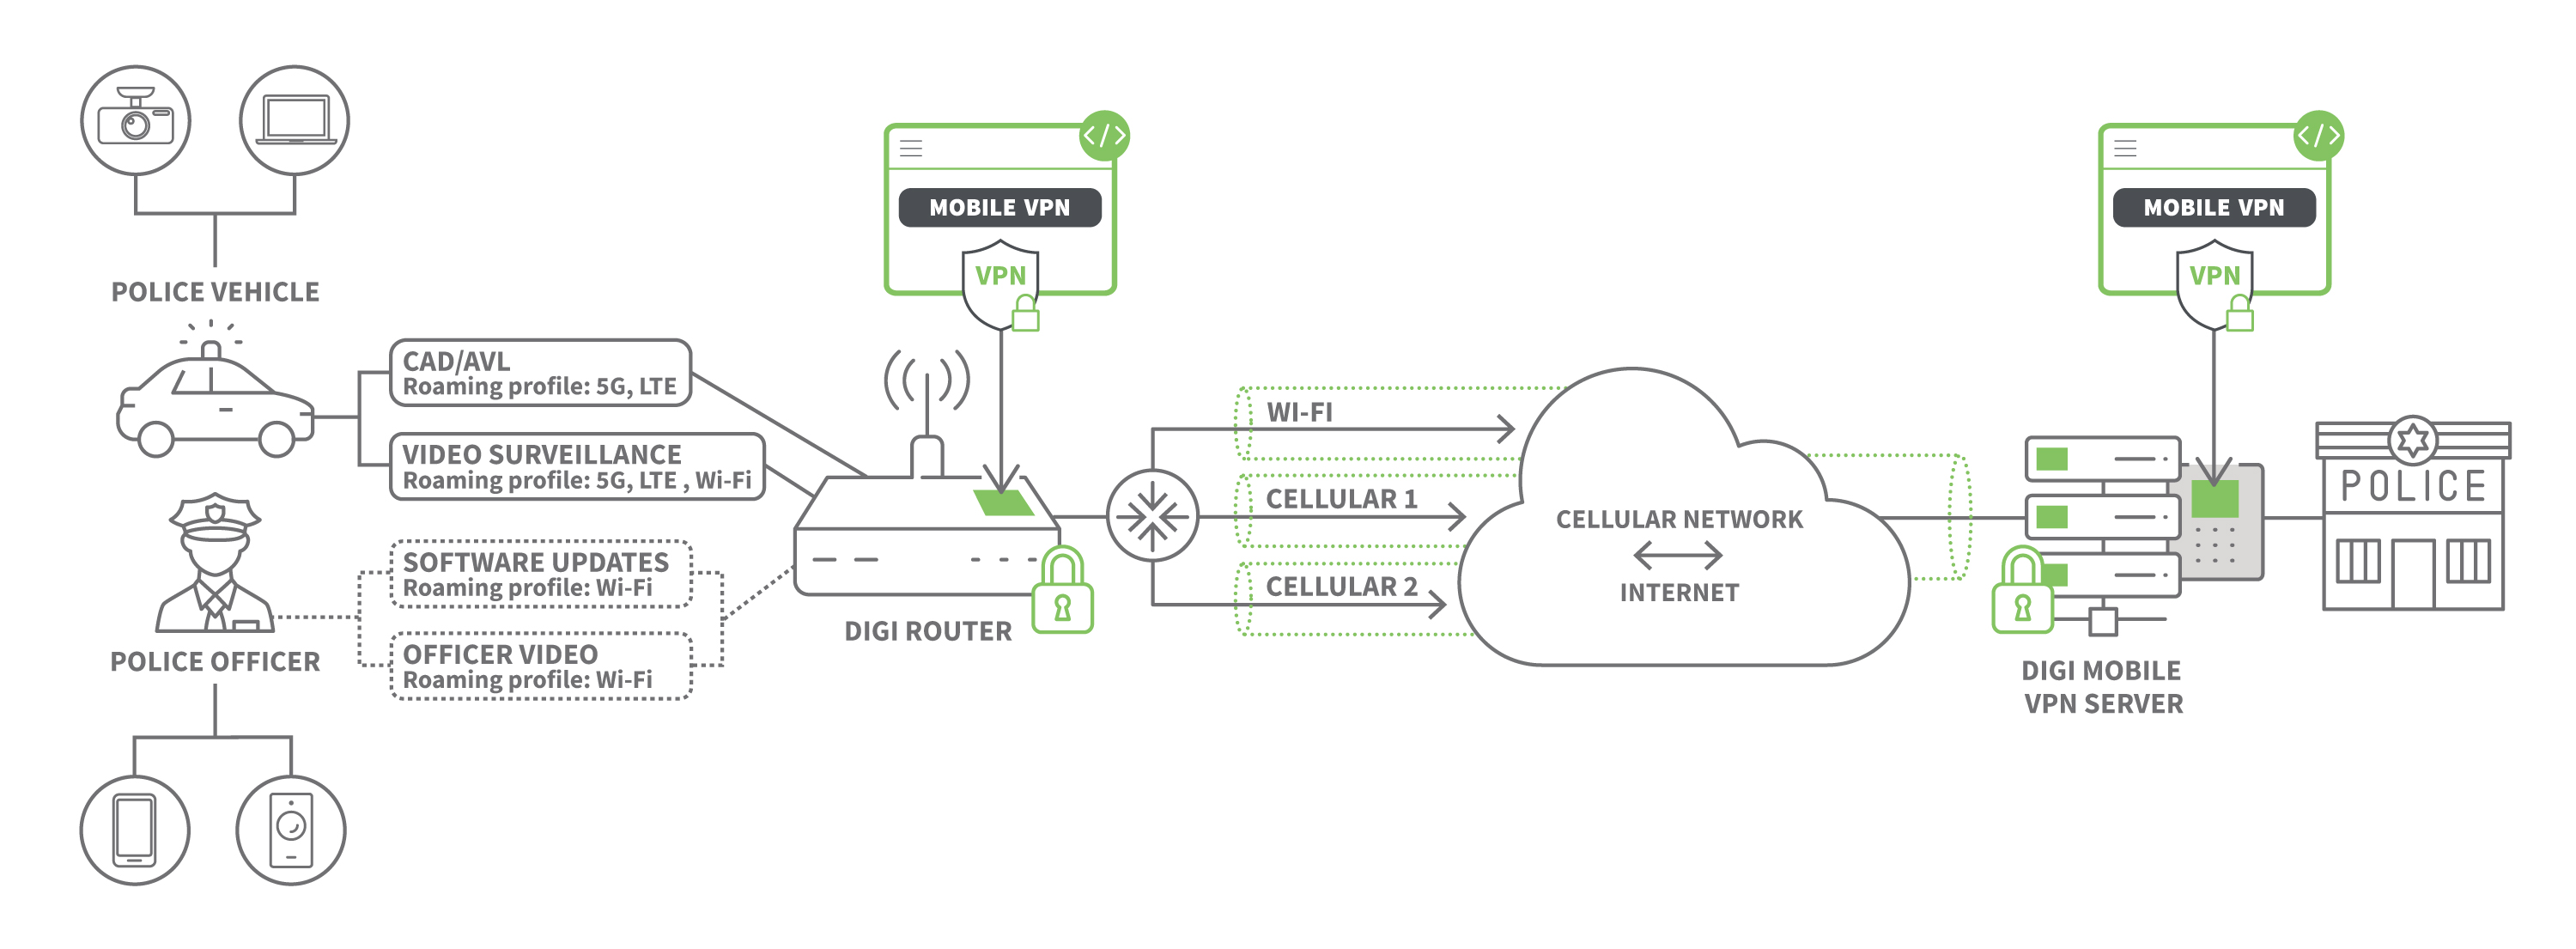 Digi Mobile VPN diagram